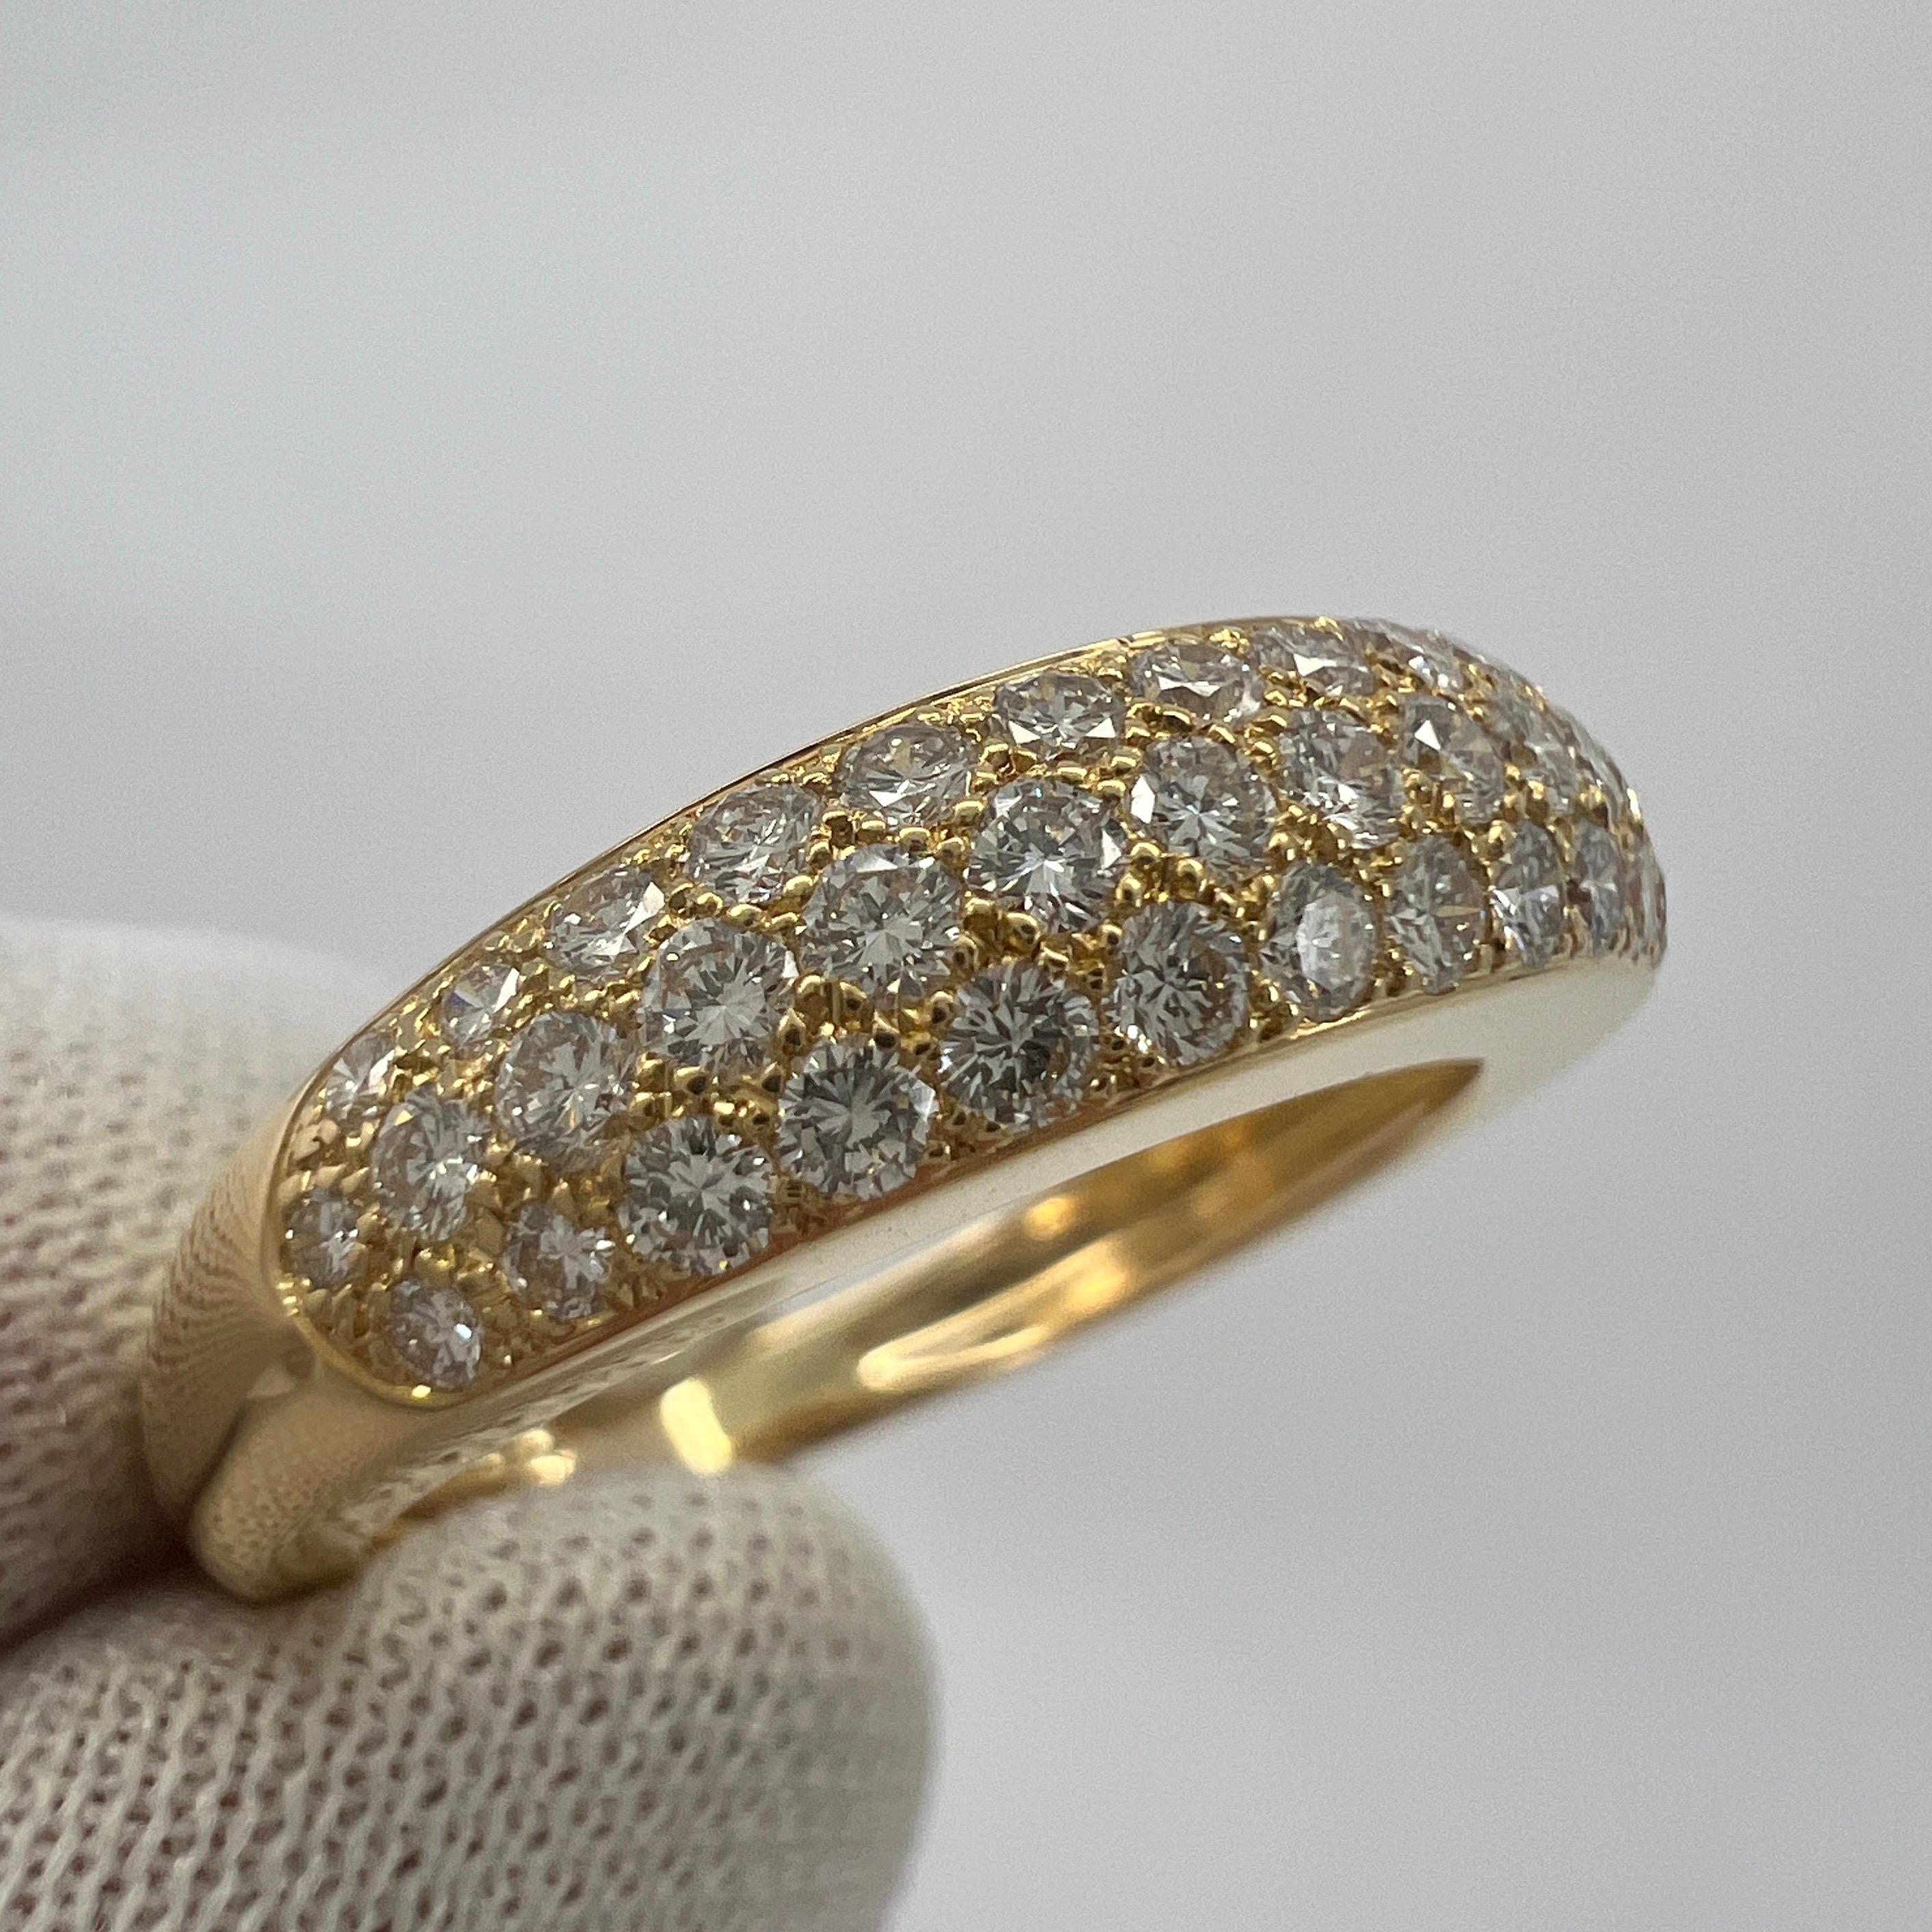 Seltene Vintage Van Cleef & Arpels Pavé Diamant 18k Gelbgold Band Ring.

Dieser wunderschön gearbeitete Ring von VCA zeichnet sich durch ein geschwungenes Kuppeldesign mit drei Reihen wunderschön gefasster Pavé-Diamanten aus, die auf halber Strecke